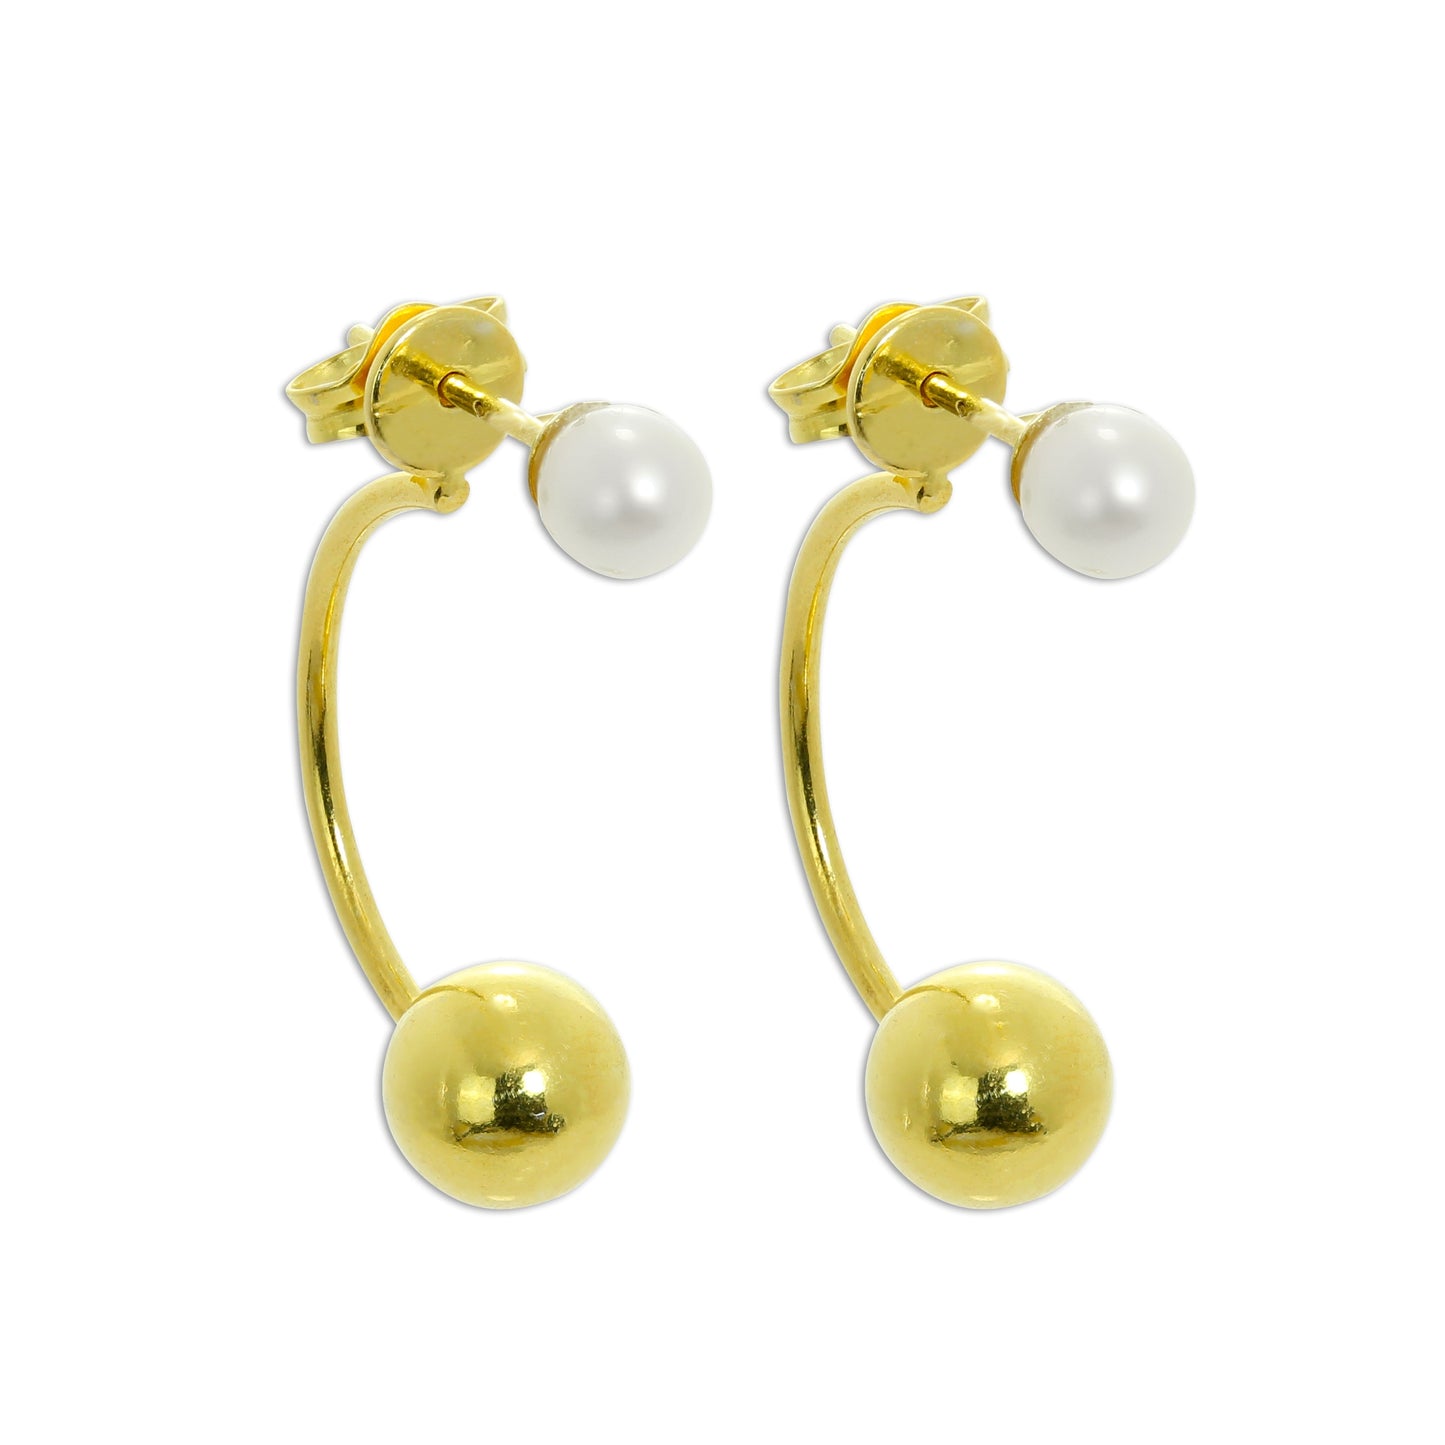 Gold Plated Sterling Silver Pearl Half Hoop & Ball Stud Earrings